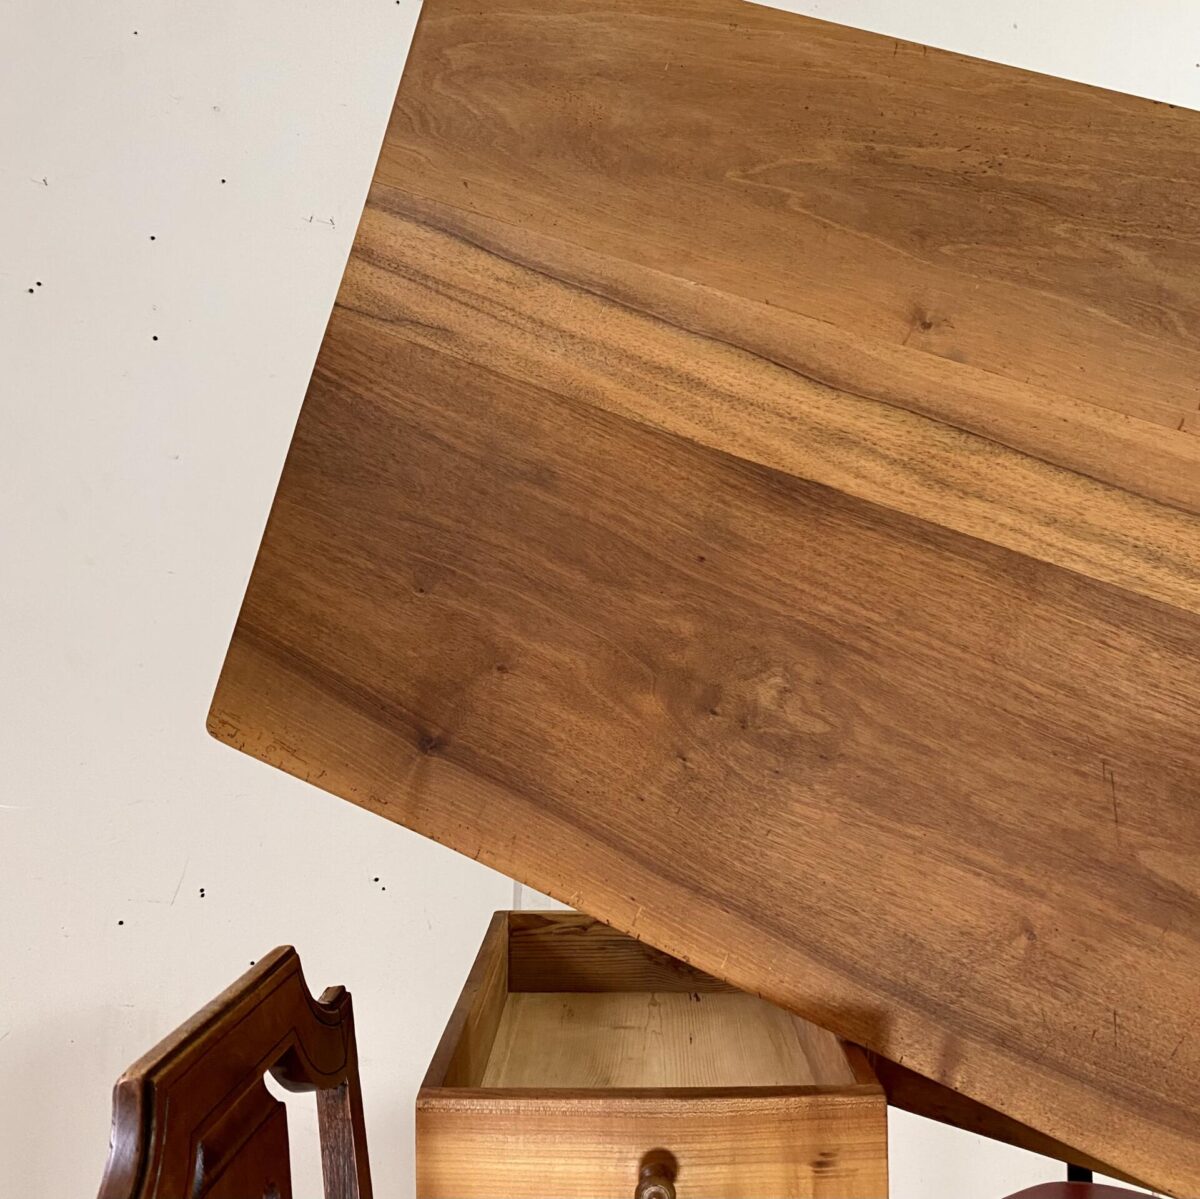 Deuxieme.shop alter Holztisch. Nussbaum Biedermeiertisch mit Schublade. 176x77cm Höhe 76.5cm. Der Tisch ist in stabilem leicht restaurierten Zustand. Die Holz Oberflächen sind mit Naturöl behandelt. Das Tischblatt, mit Gratleisten, wird mittels Holzzapfen mit dem Unterbau verbunden. Es finden angenehm 6 und bis zu 8 Personen daran Platz. 